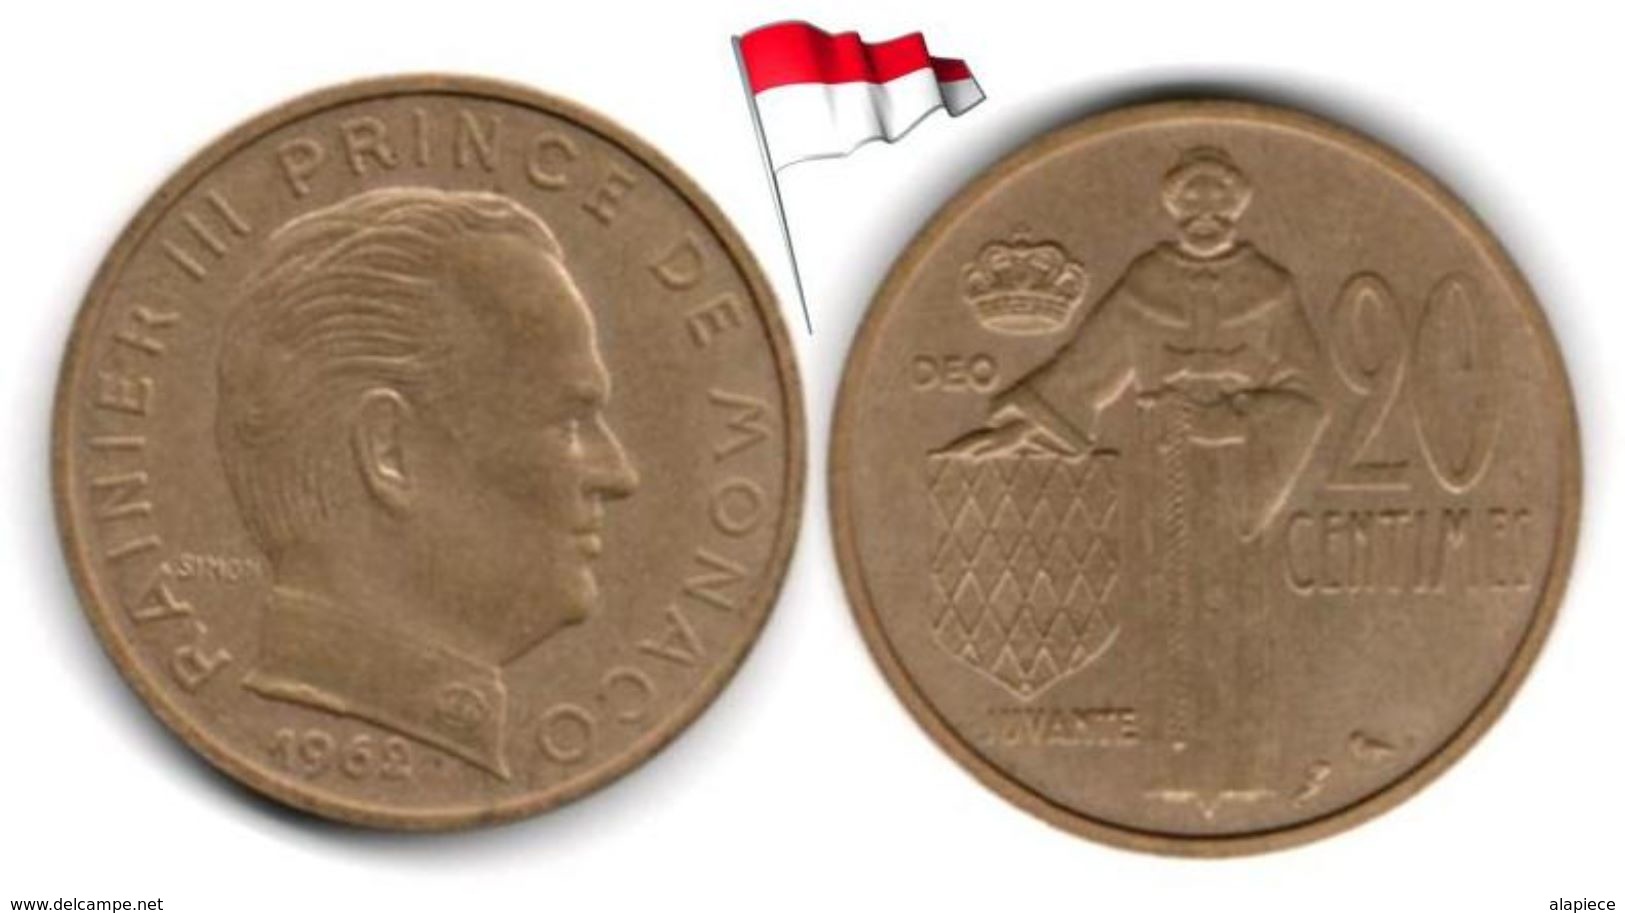 Monaco - 20 Centimes 1962 (High Grade) - 1960-2001 Francos Nuevos